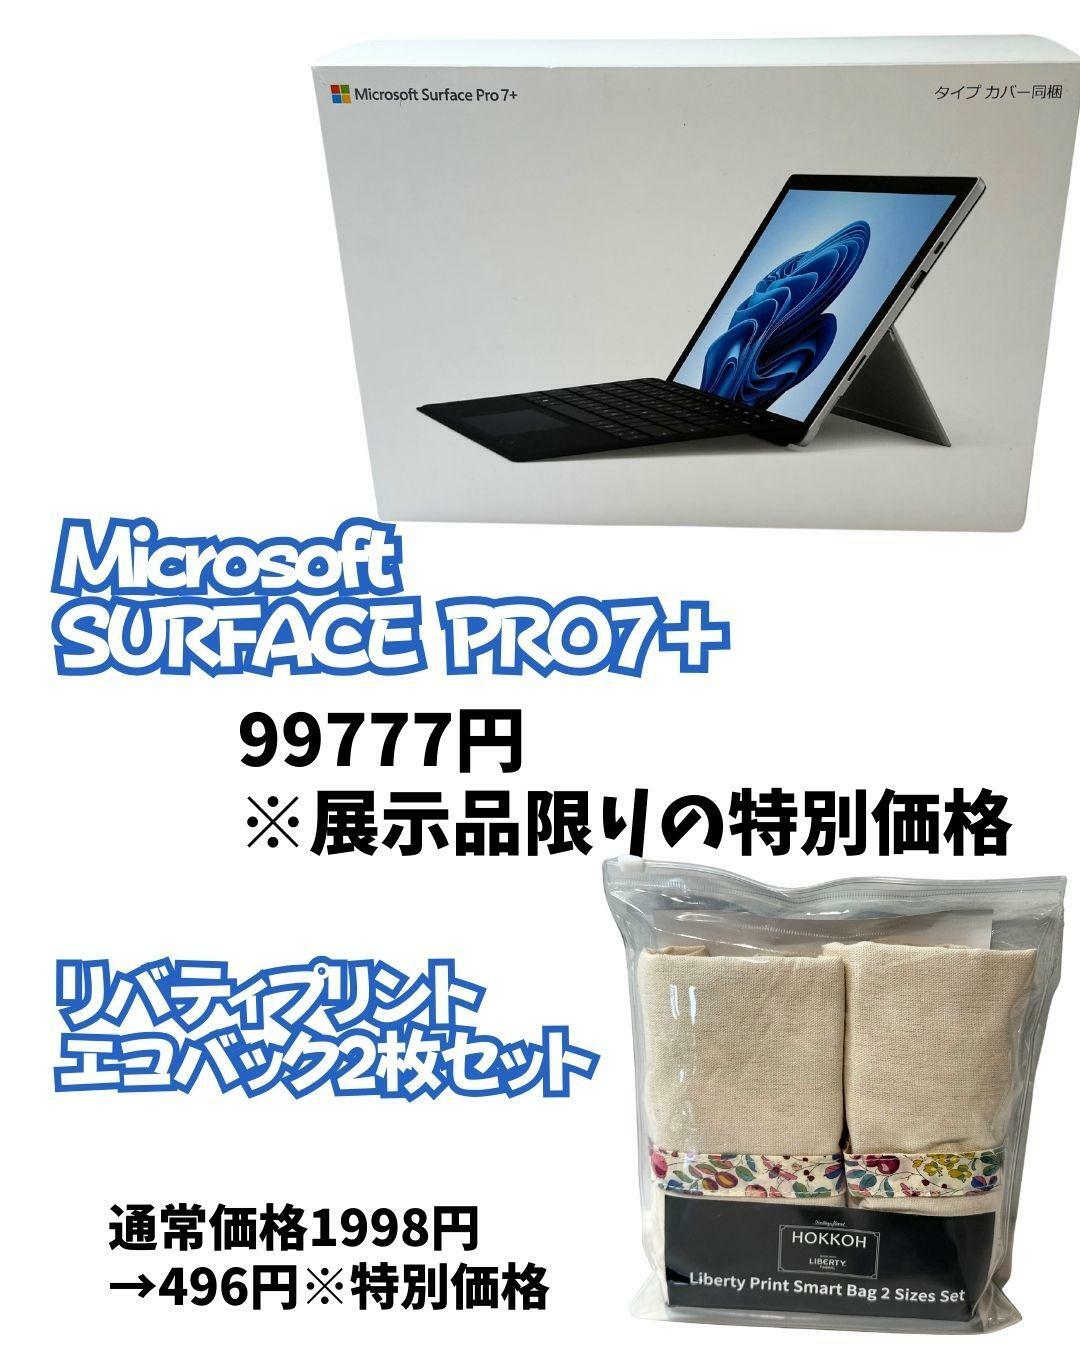 【コストコ】Microsoft SURFACE　Pro7＋展示品を購入